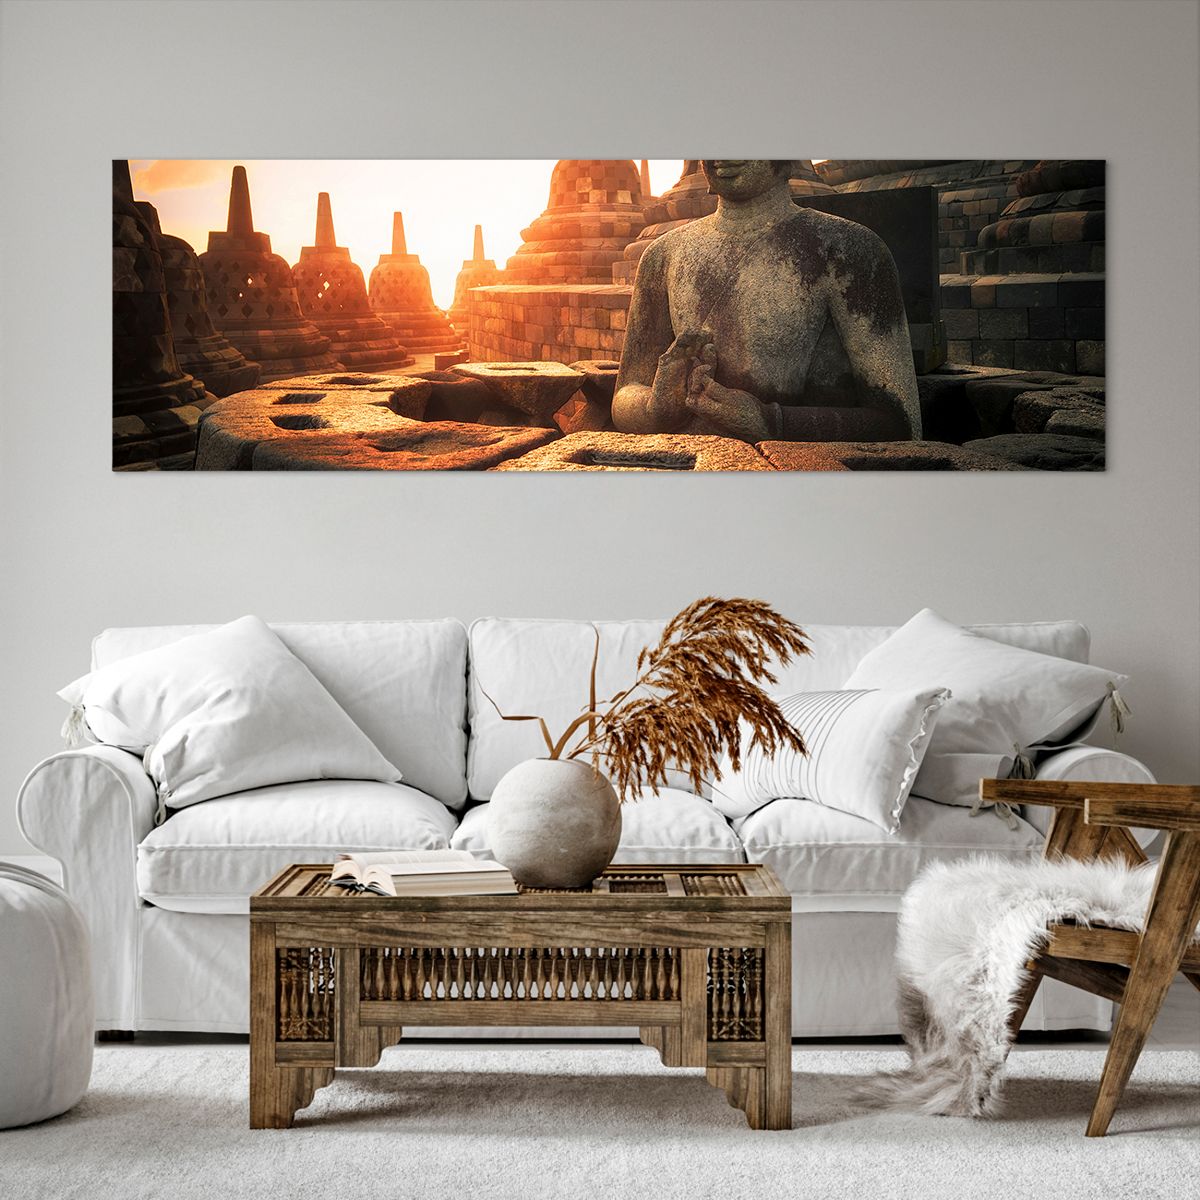 Bild auf Leinwand Asien, Bild auf Leinwand Buddha, Bild auf Leinwand Borobudur, Bild auf Leinwand Kultur, Bild auf Leinwand Meditation